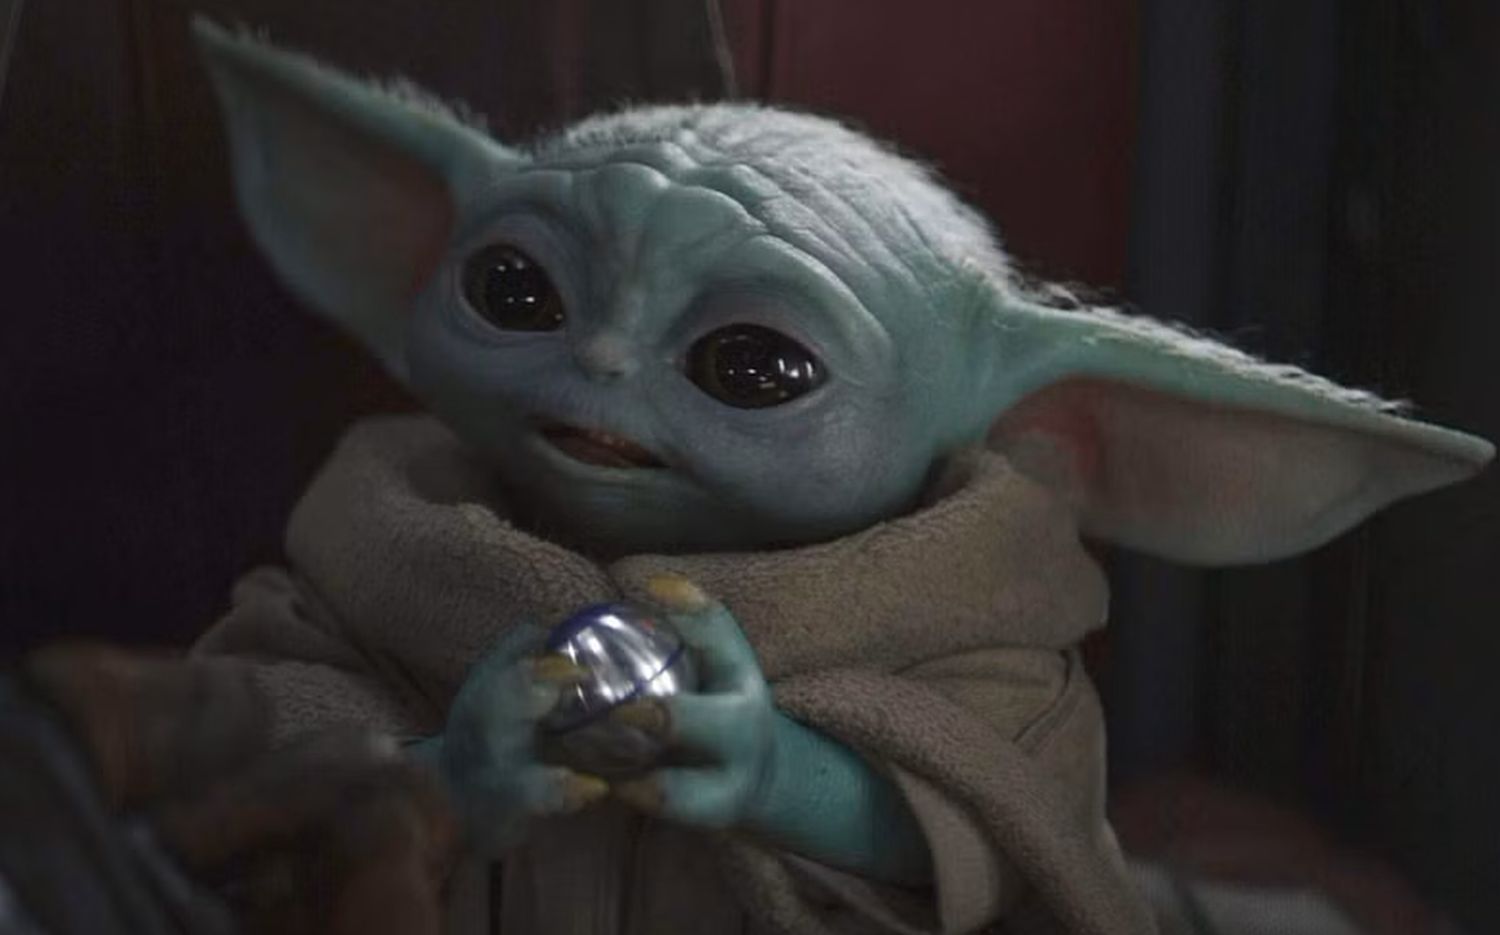 Star Wars Grogu Baby Yoda Plüschspielzeug, 11-in Das Kind aus The